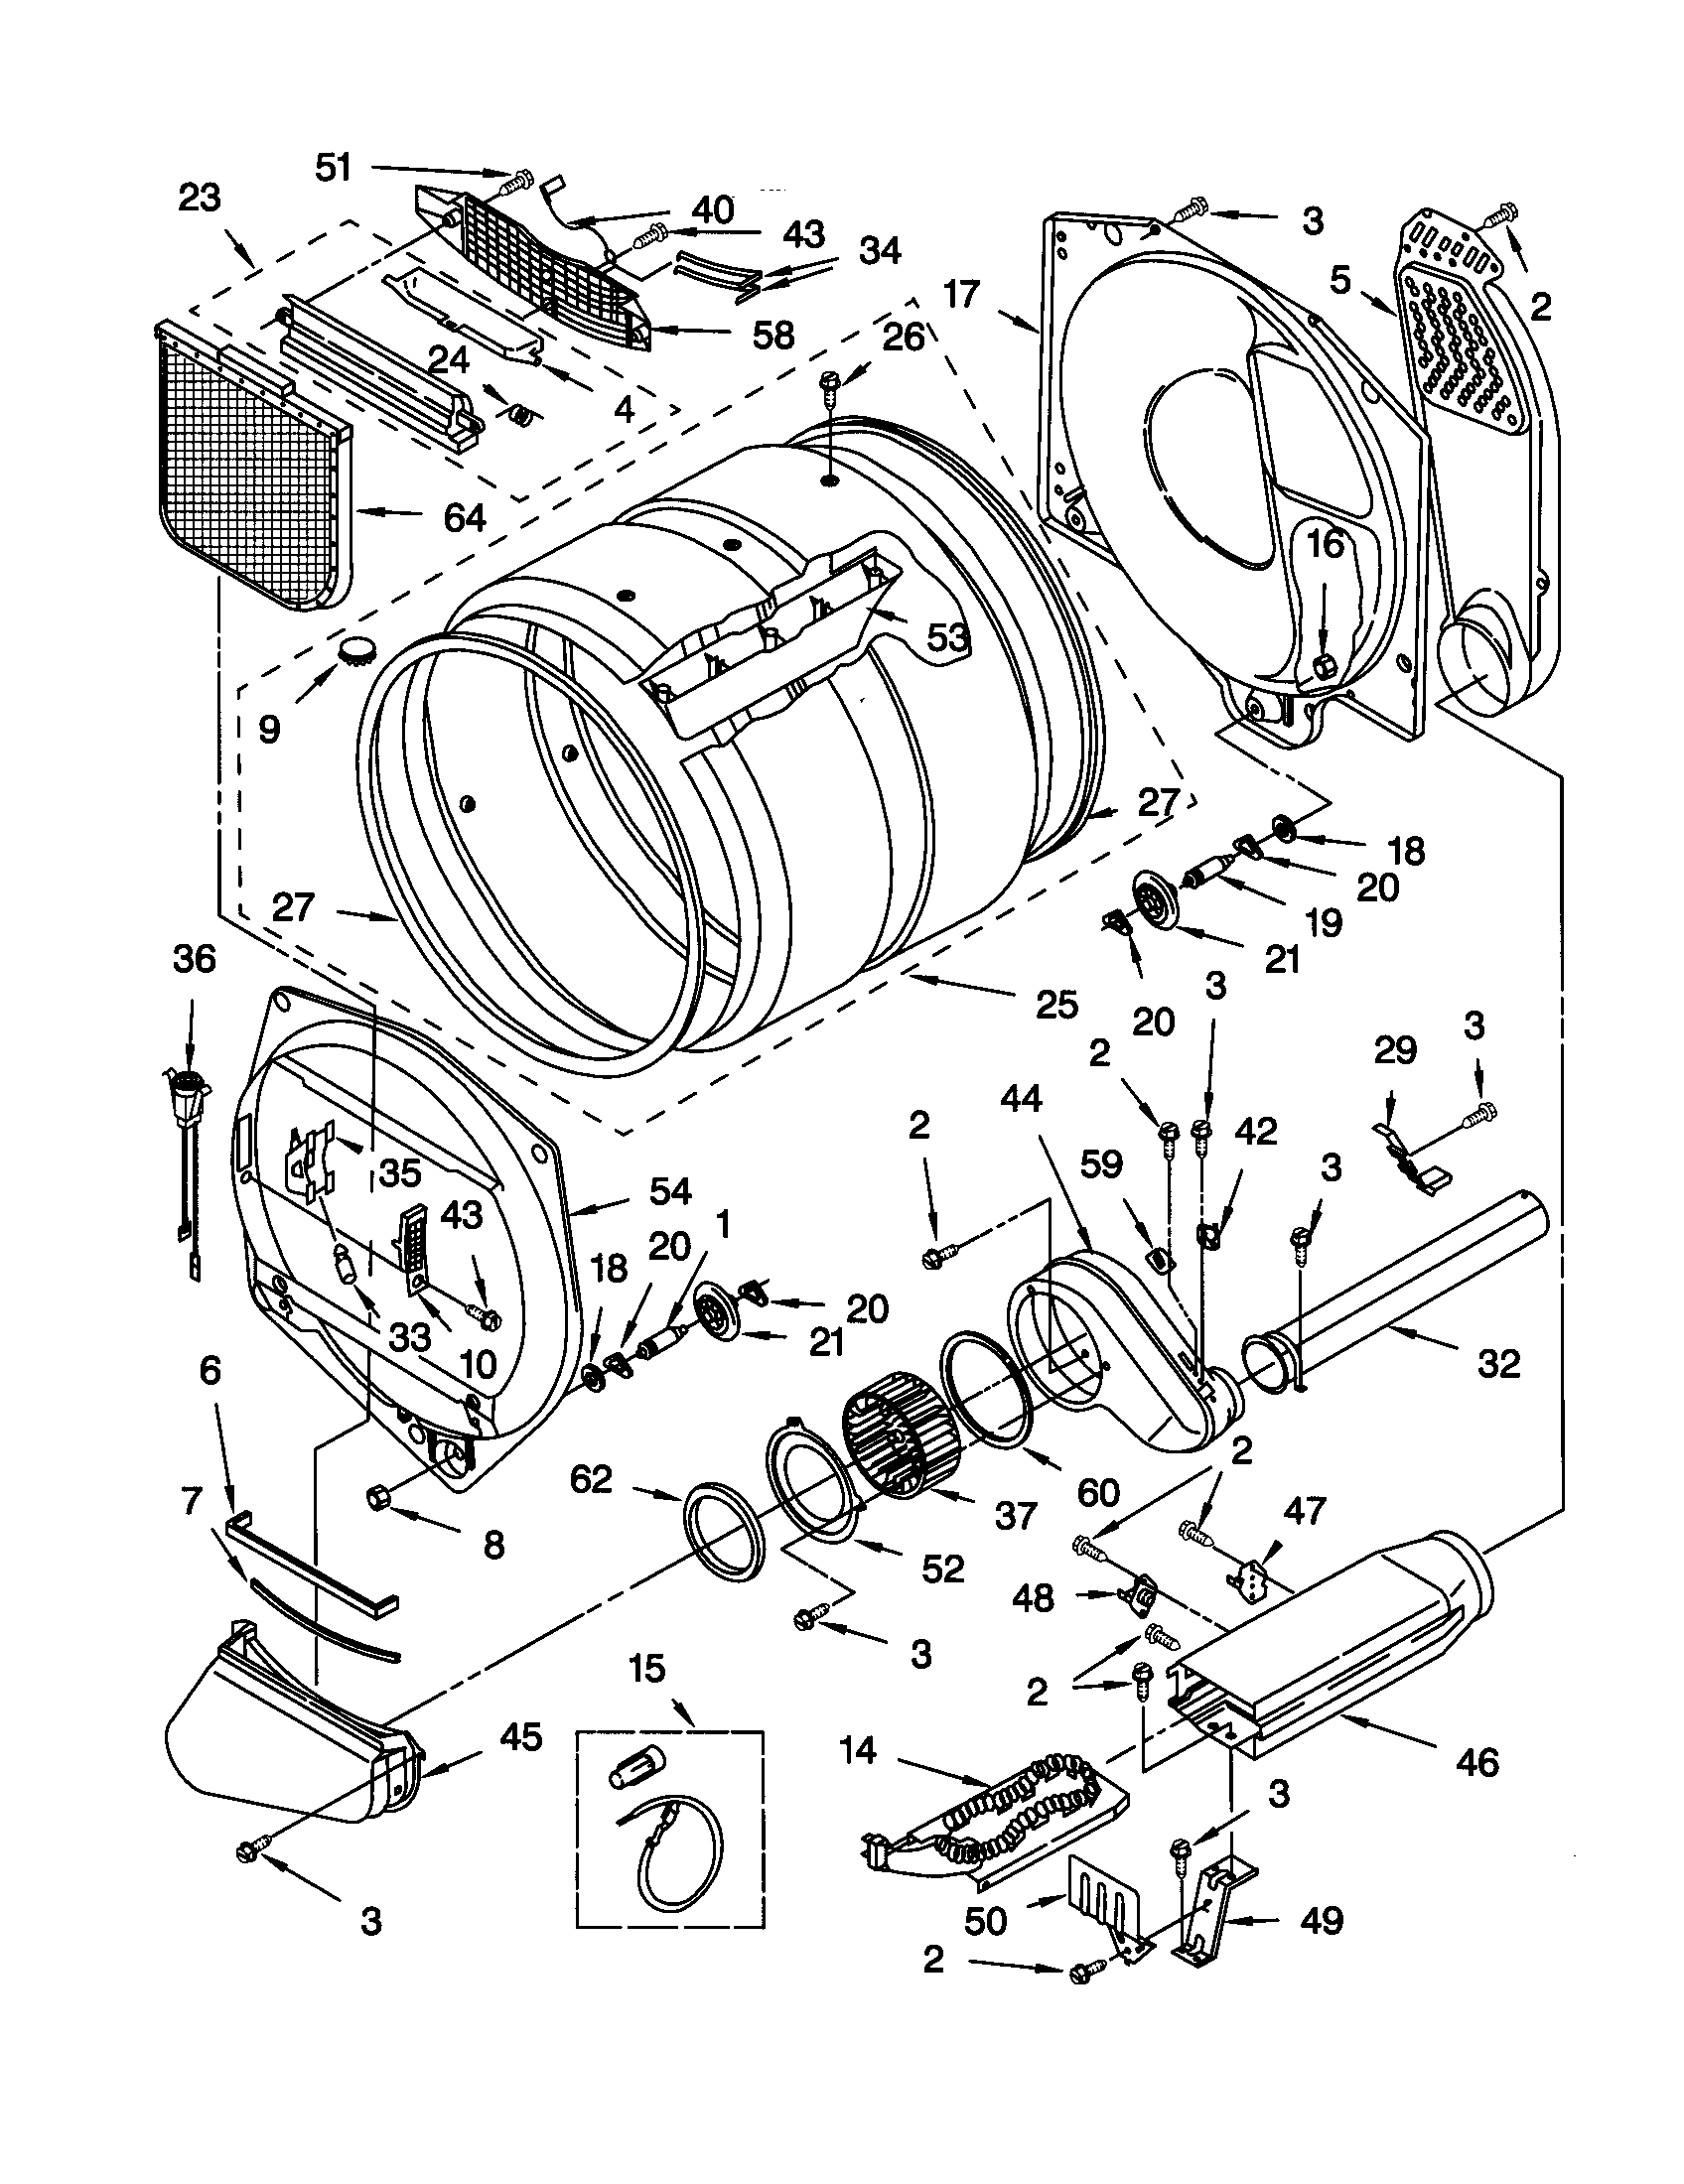 kenmore dryer series 80 manual